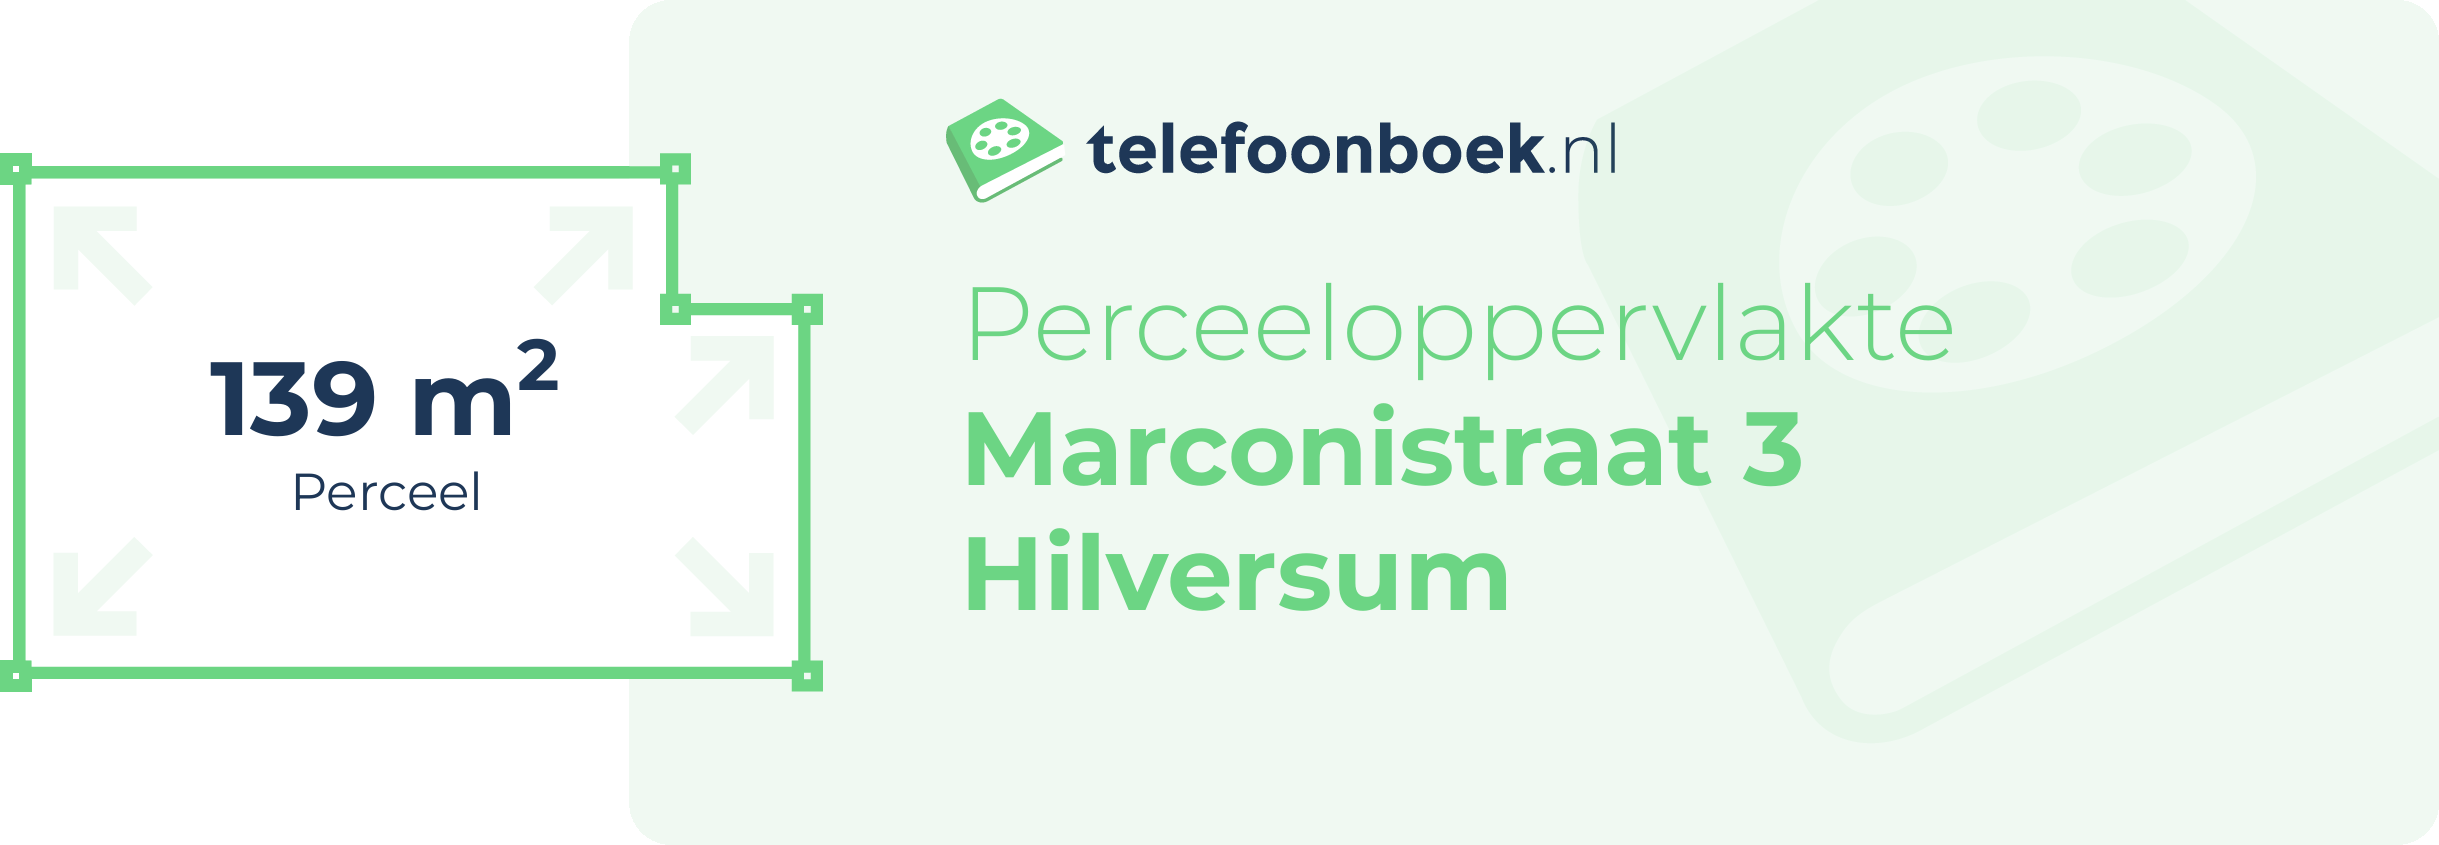 Perceeloppervlakte Marconistraat 3 Hilversum